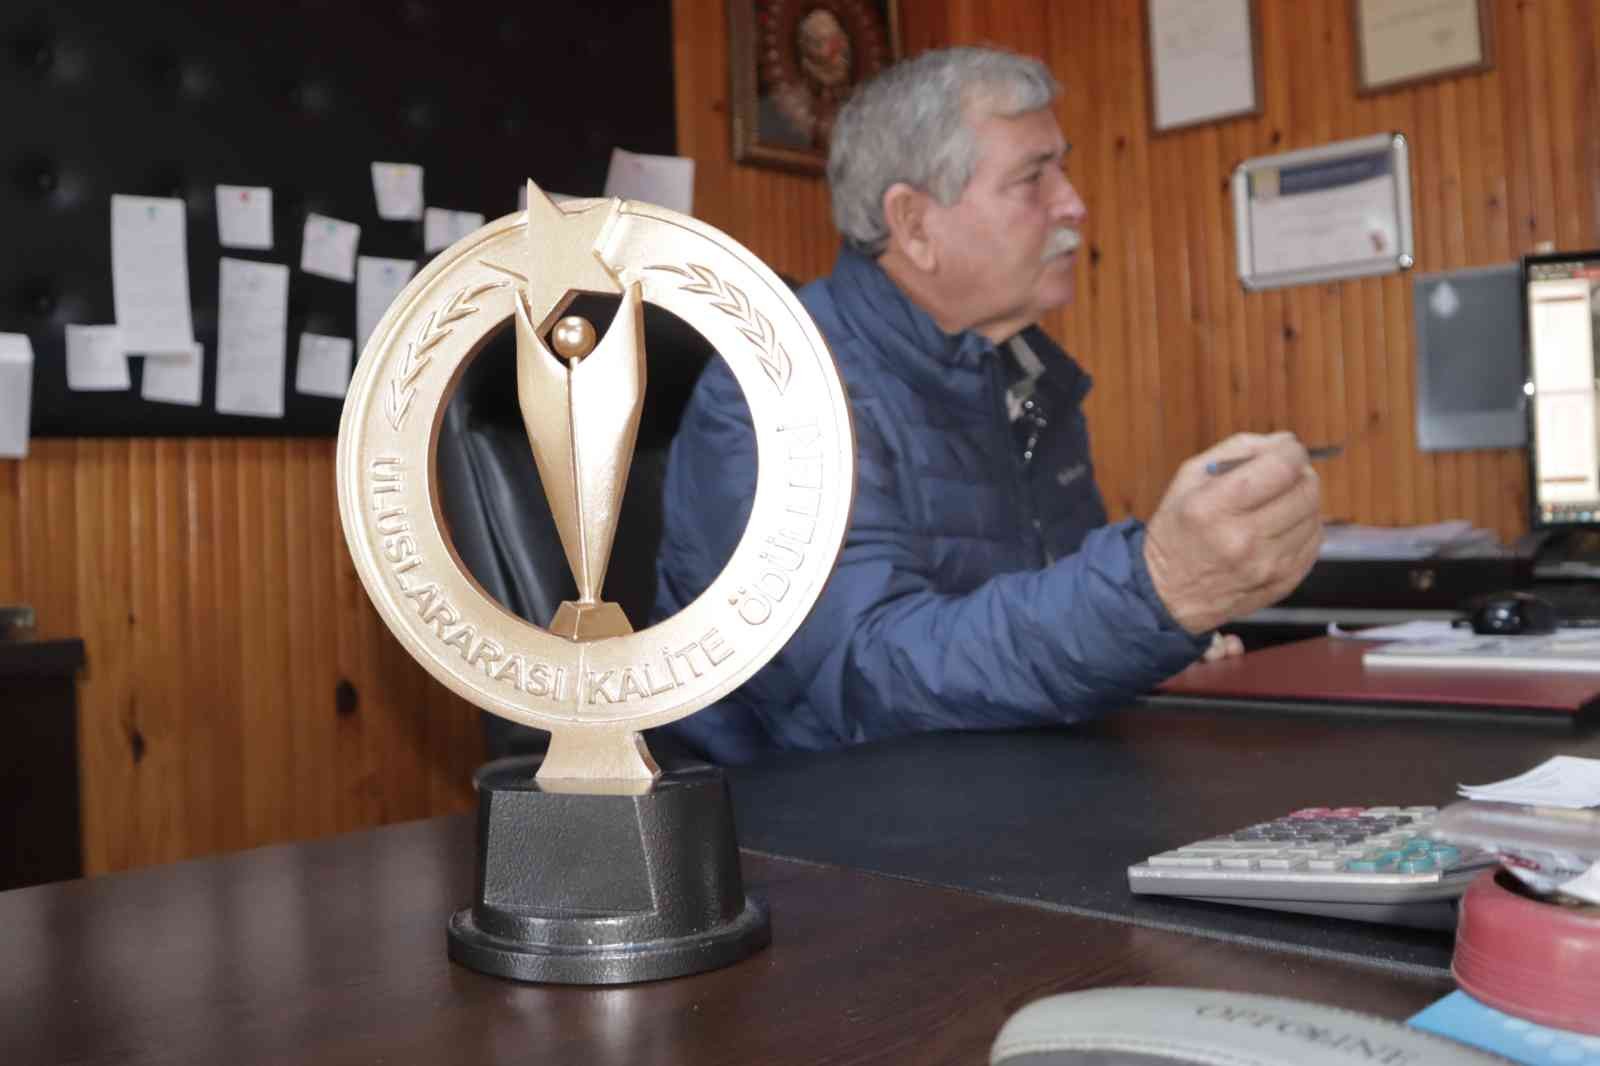 Uluslararası Altın Kalite Ödülü Dalyan’a geldi #mugla